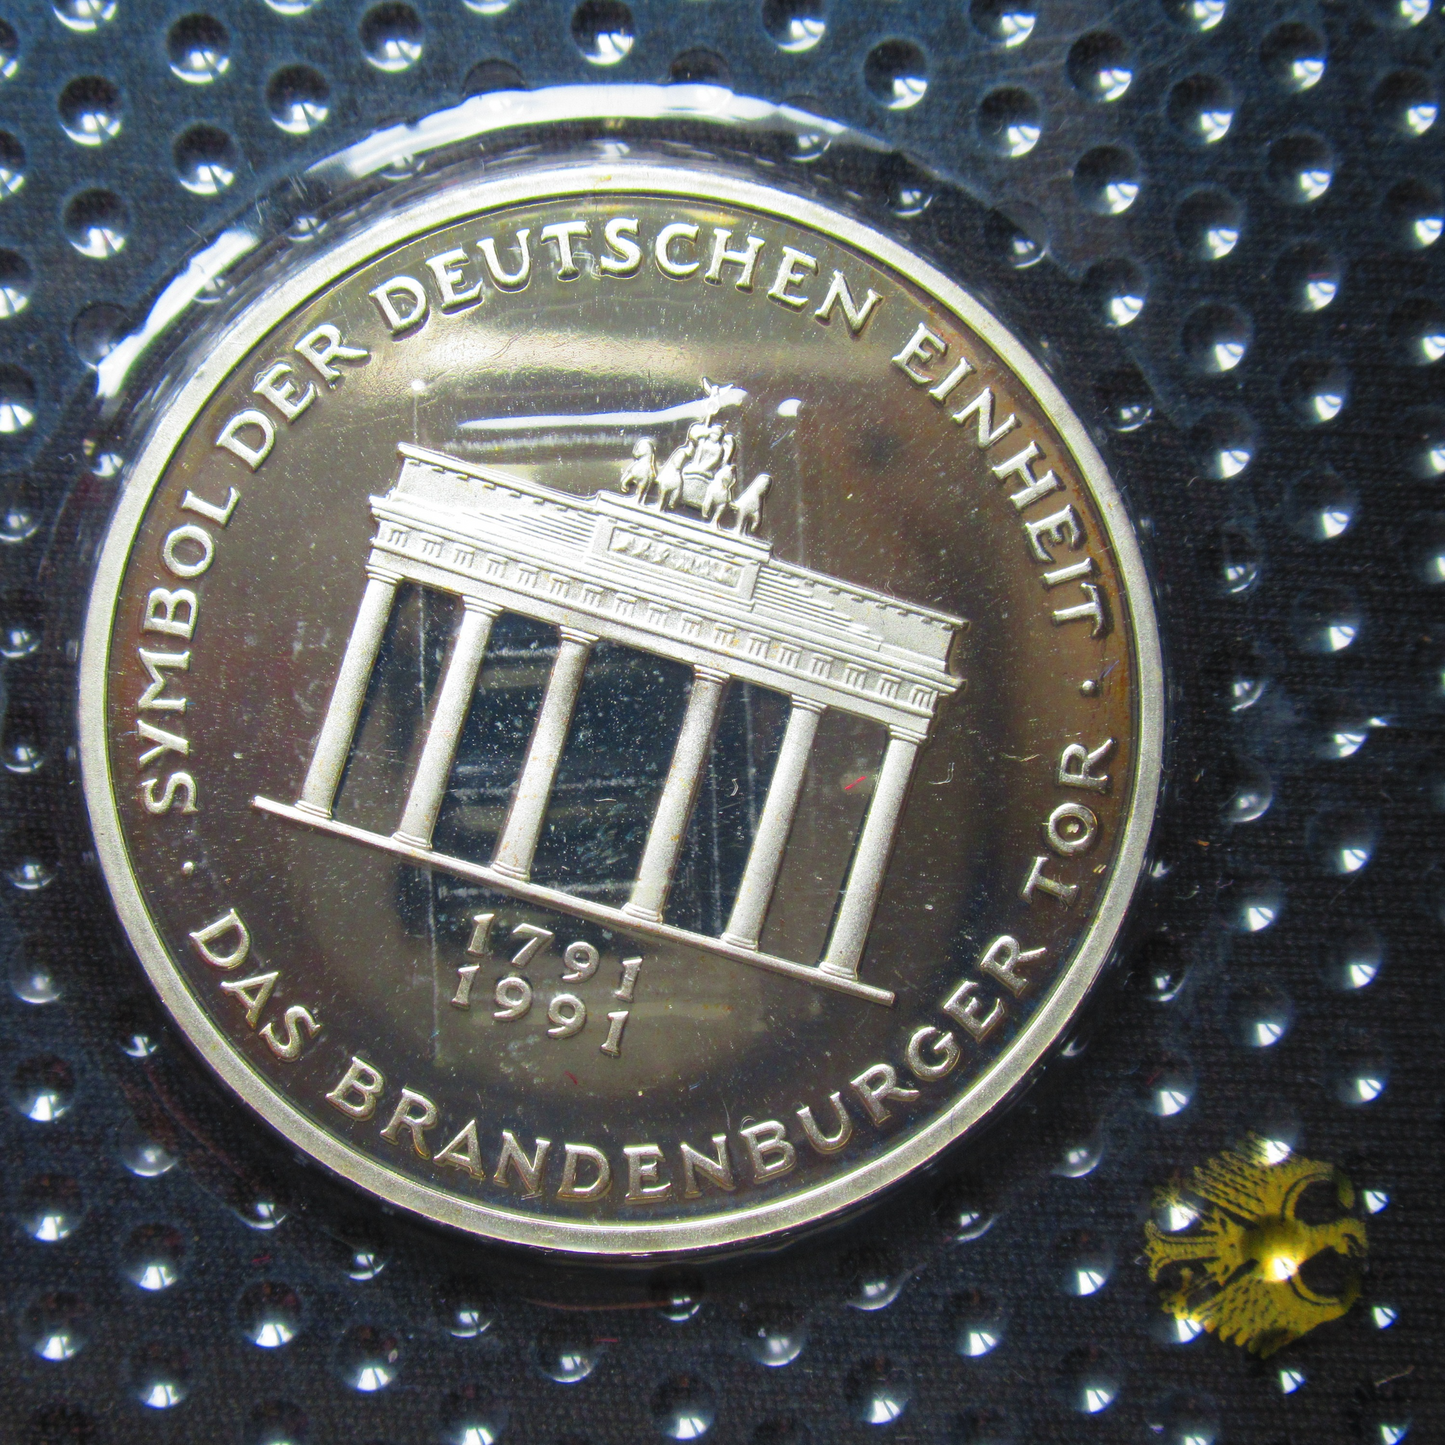 200 JAHRE BRANDENBURGER TOR, Serie 10 DM Silbermünze Spiegelglanz, 1991